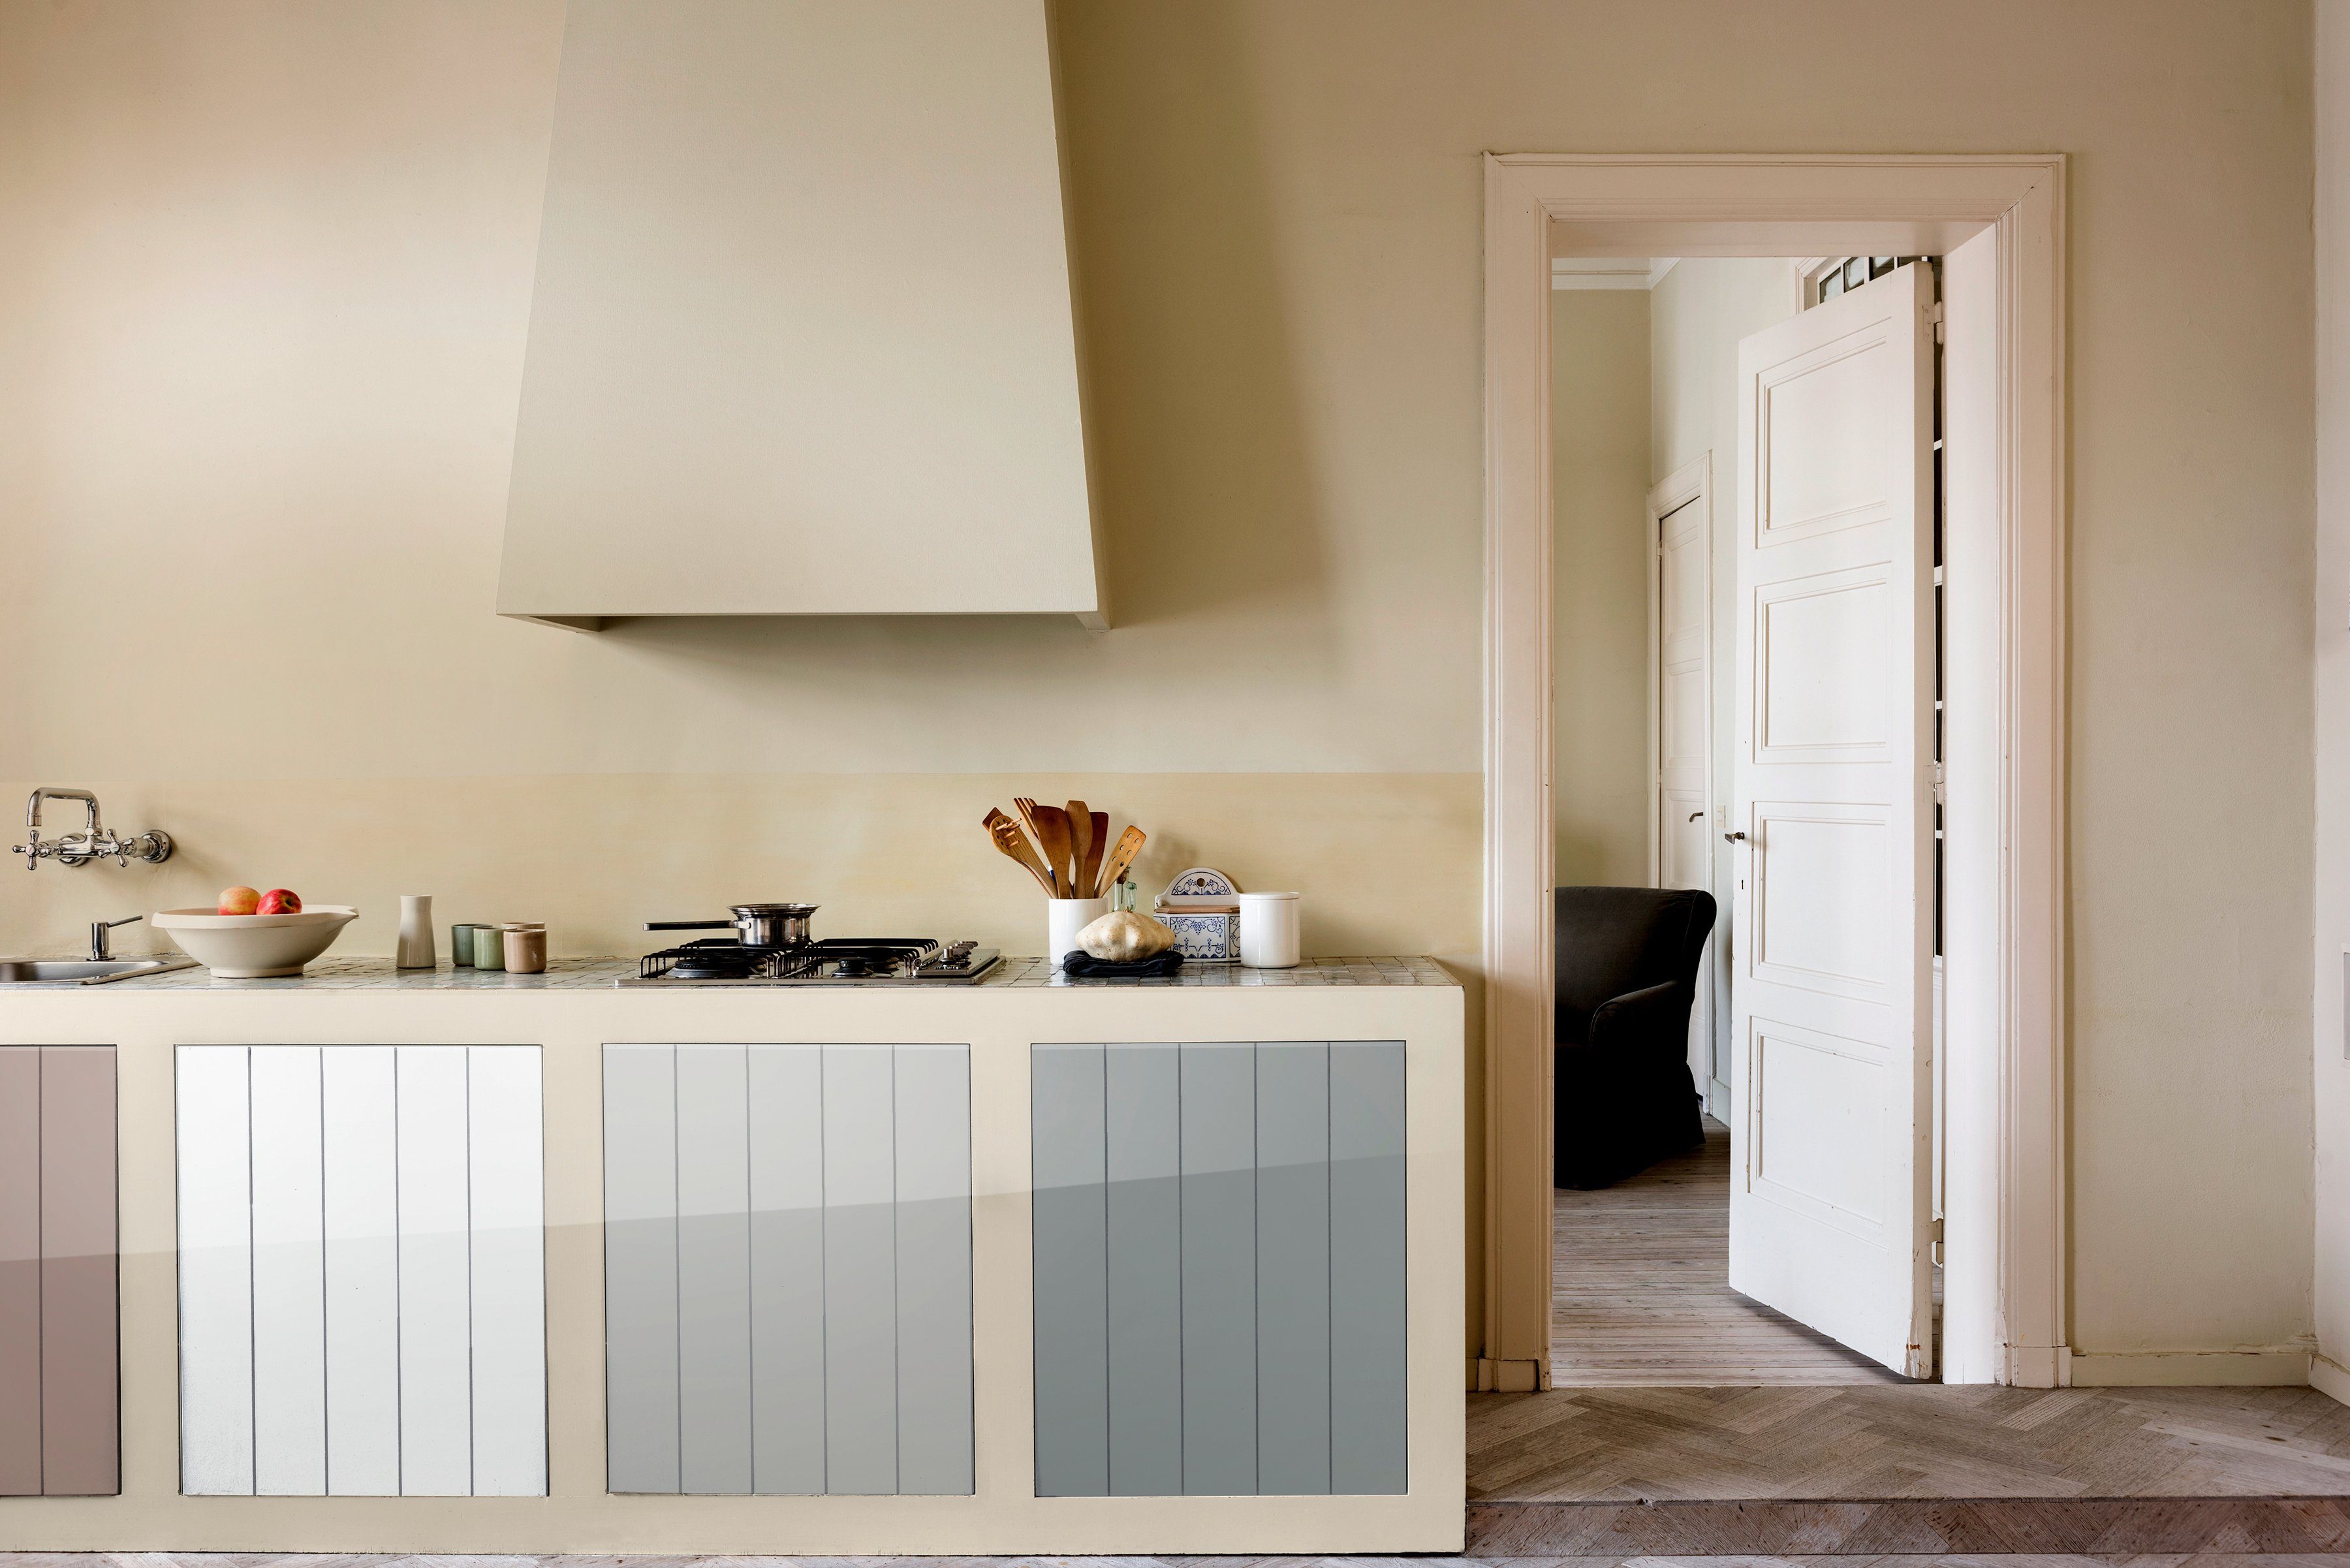 Up, Holzlack Küchen, für Möbel und Fresh l grau, 2 Dulux beton Türen,